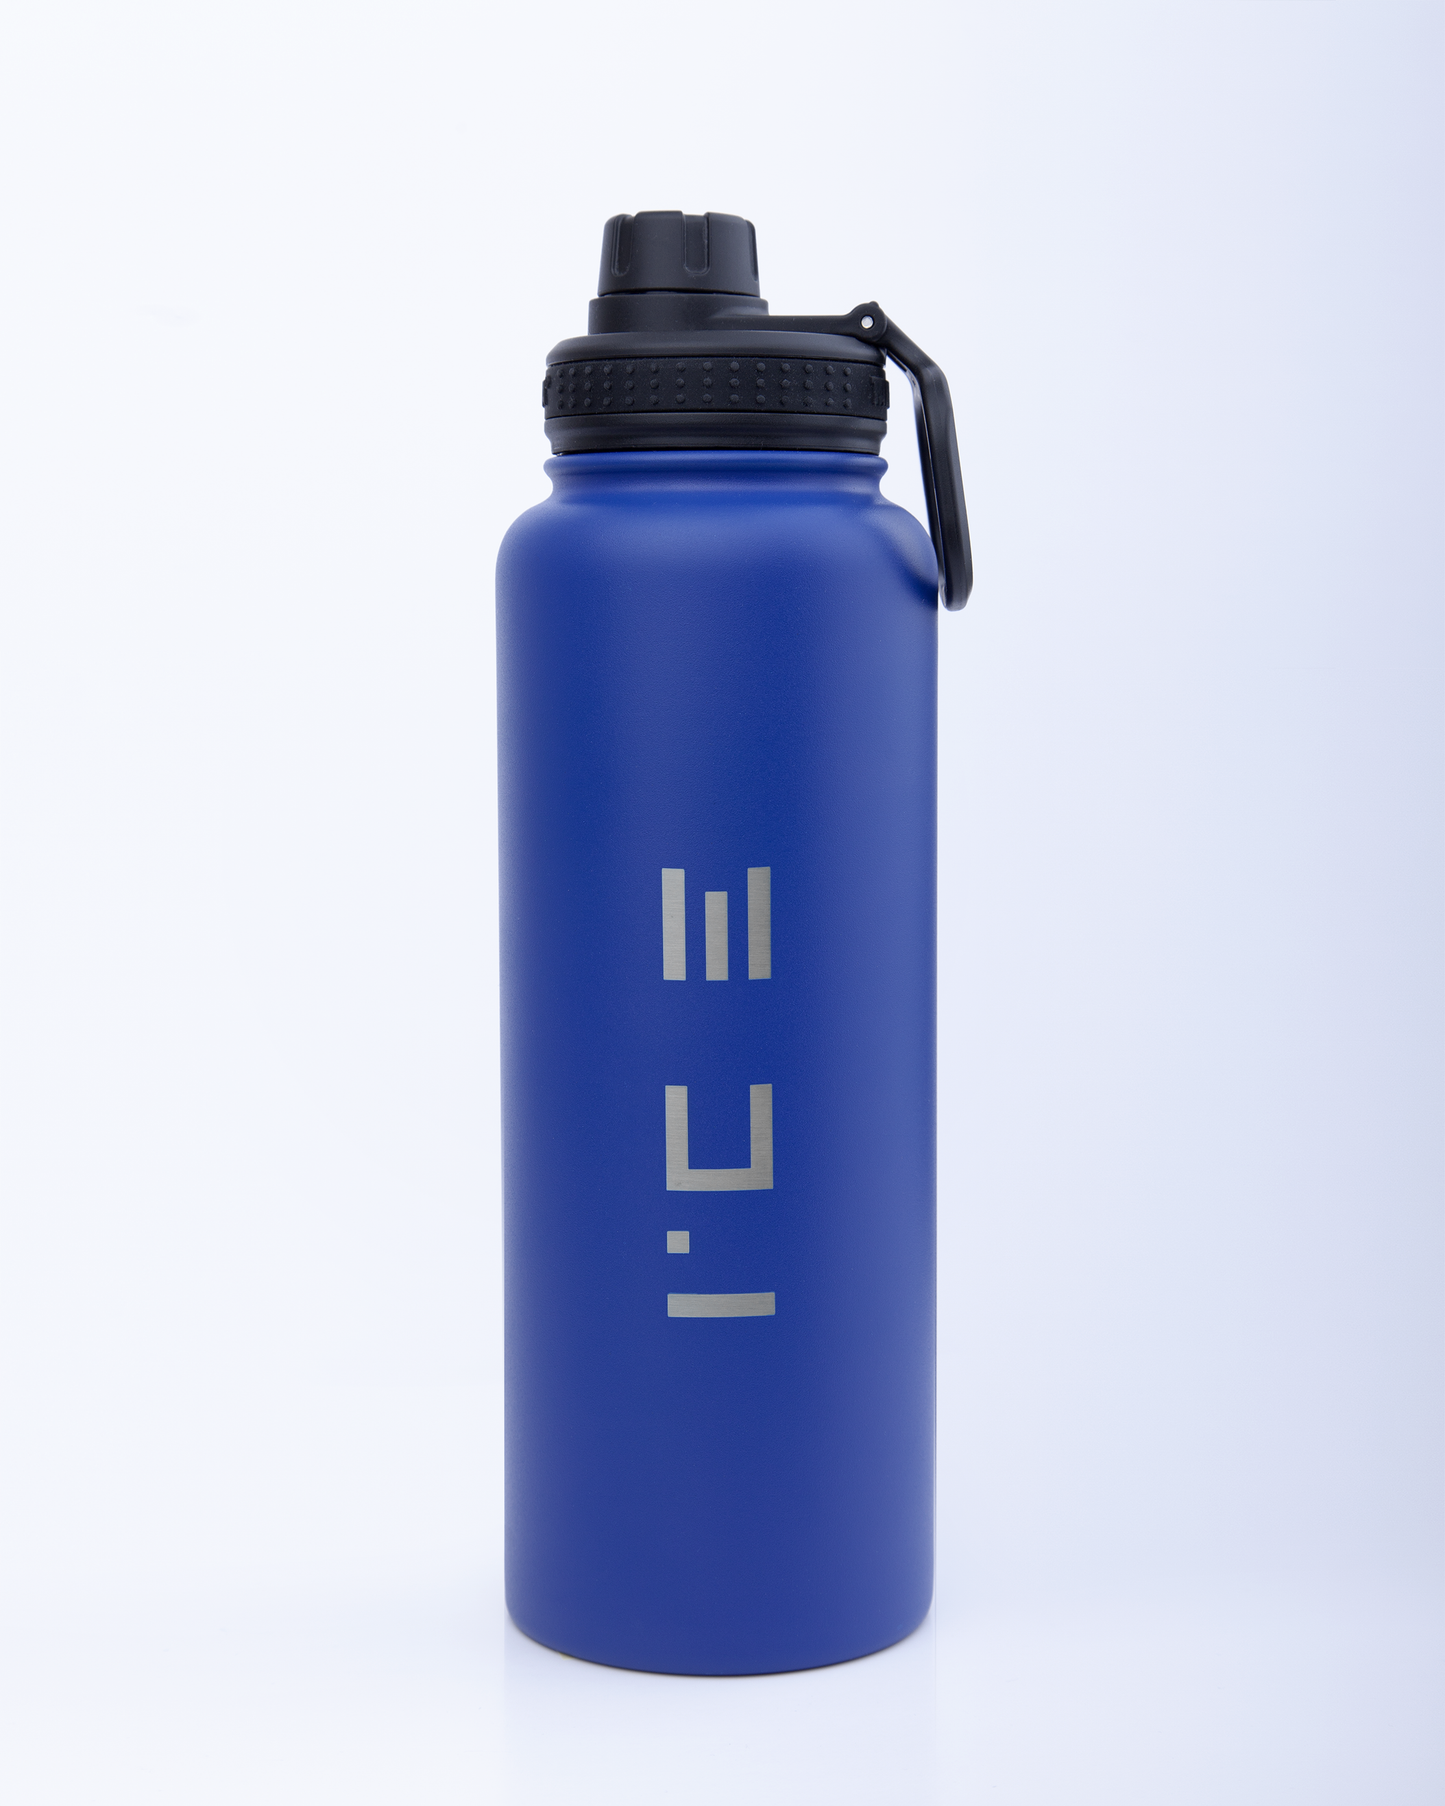 ICE Water Bottle in Blue - 22 oz